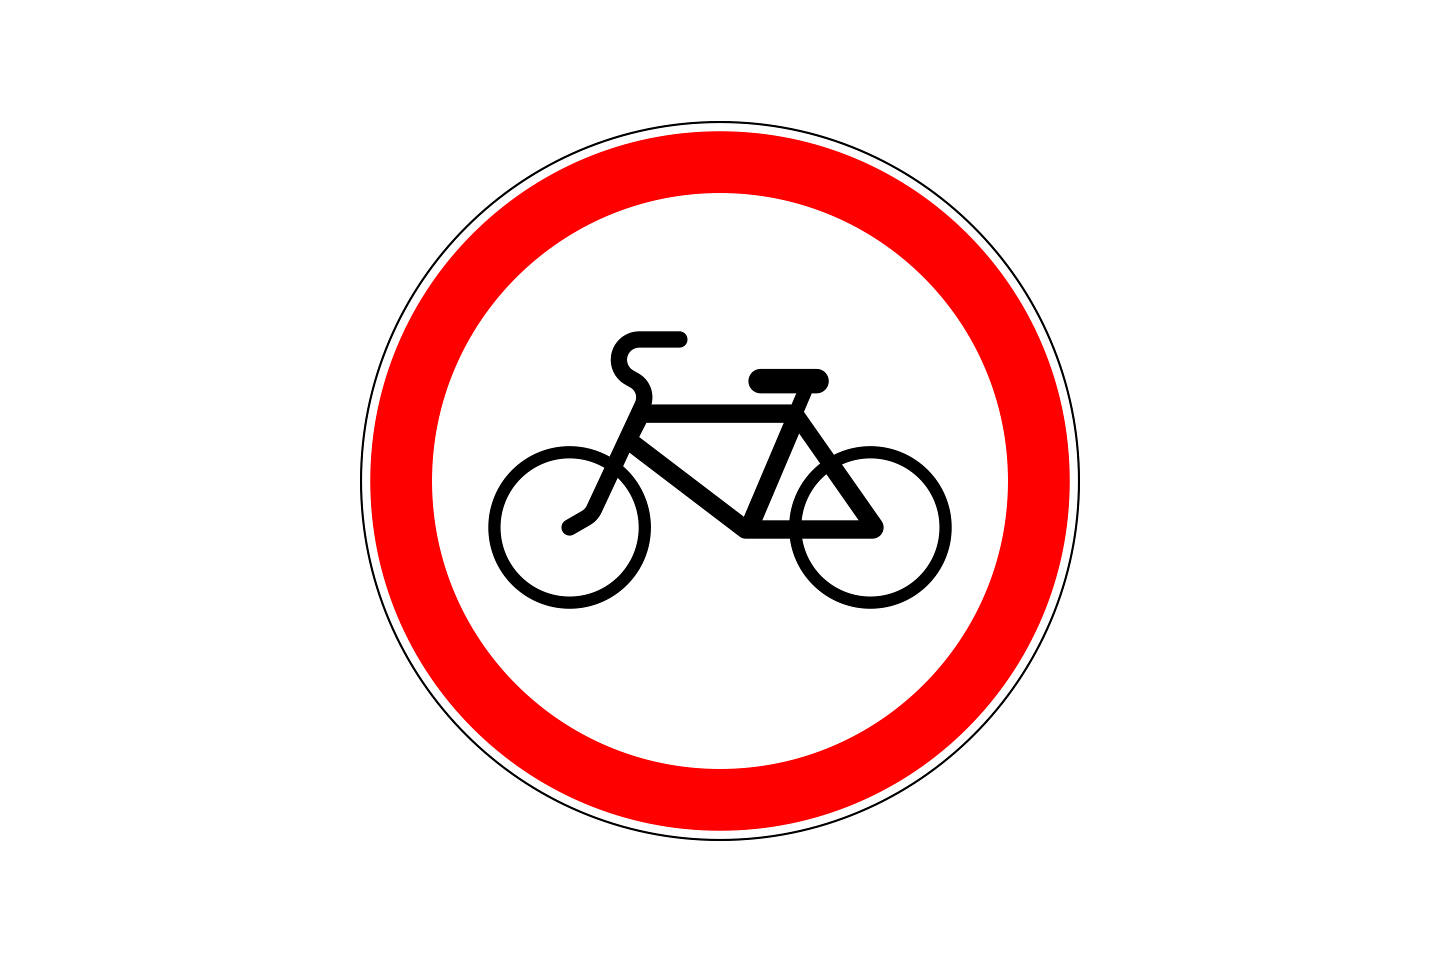 ПДД для велосипедистов Беларуси